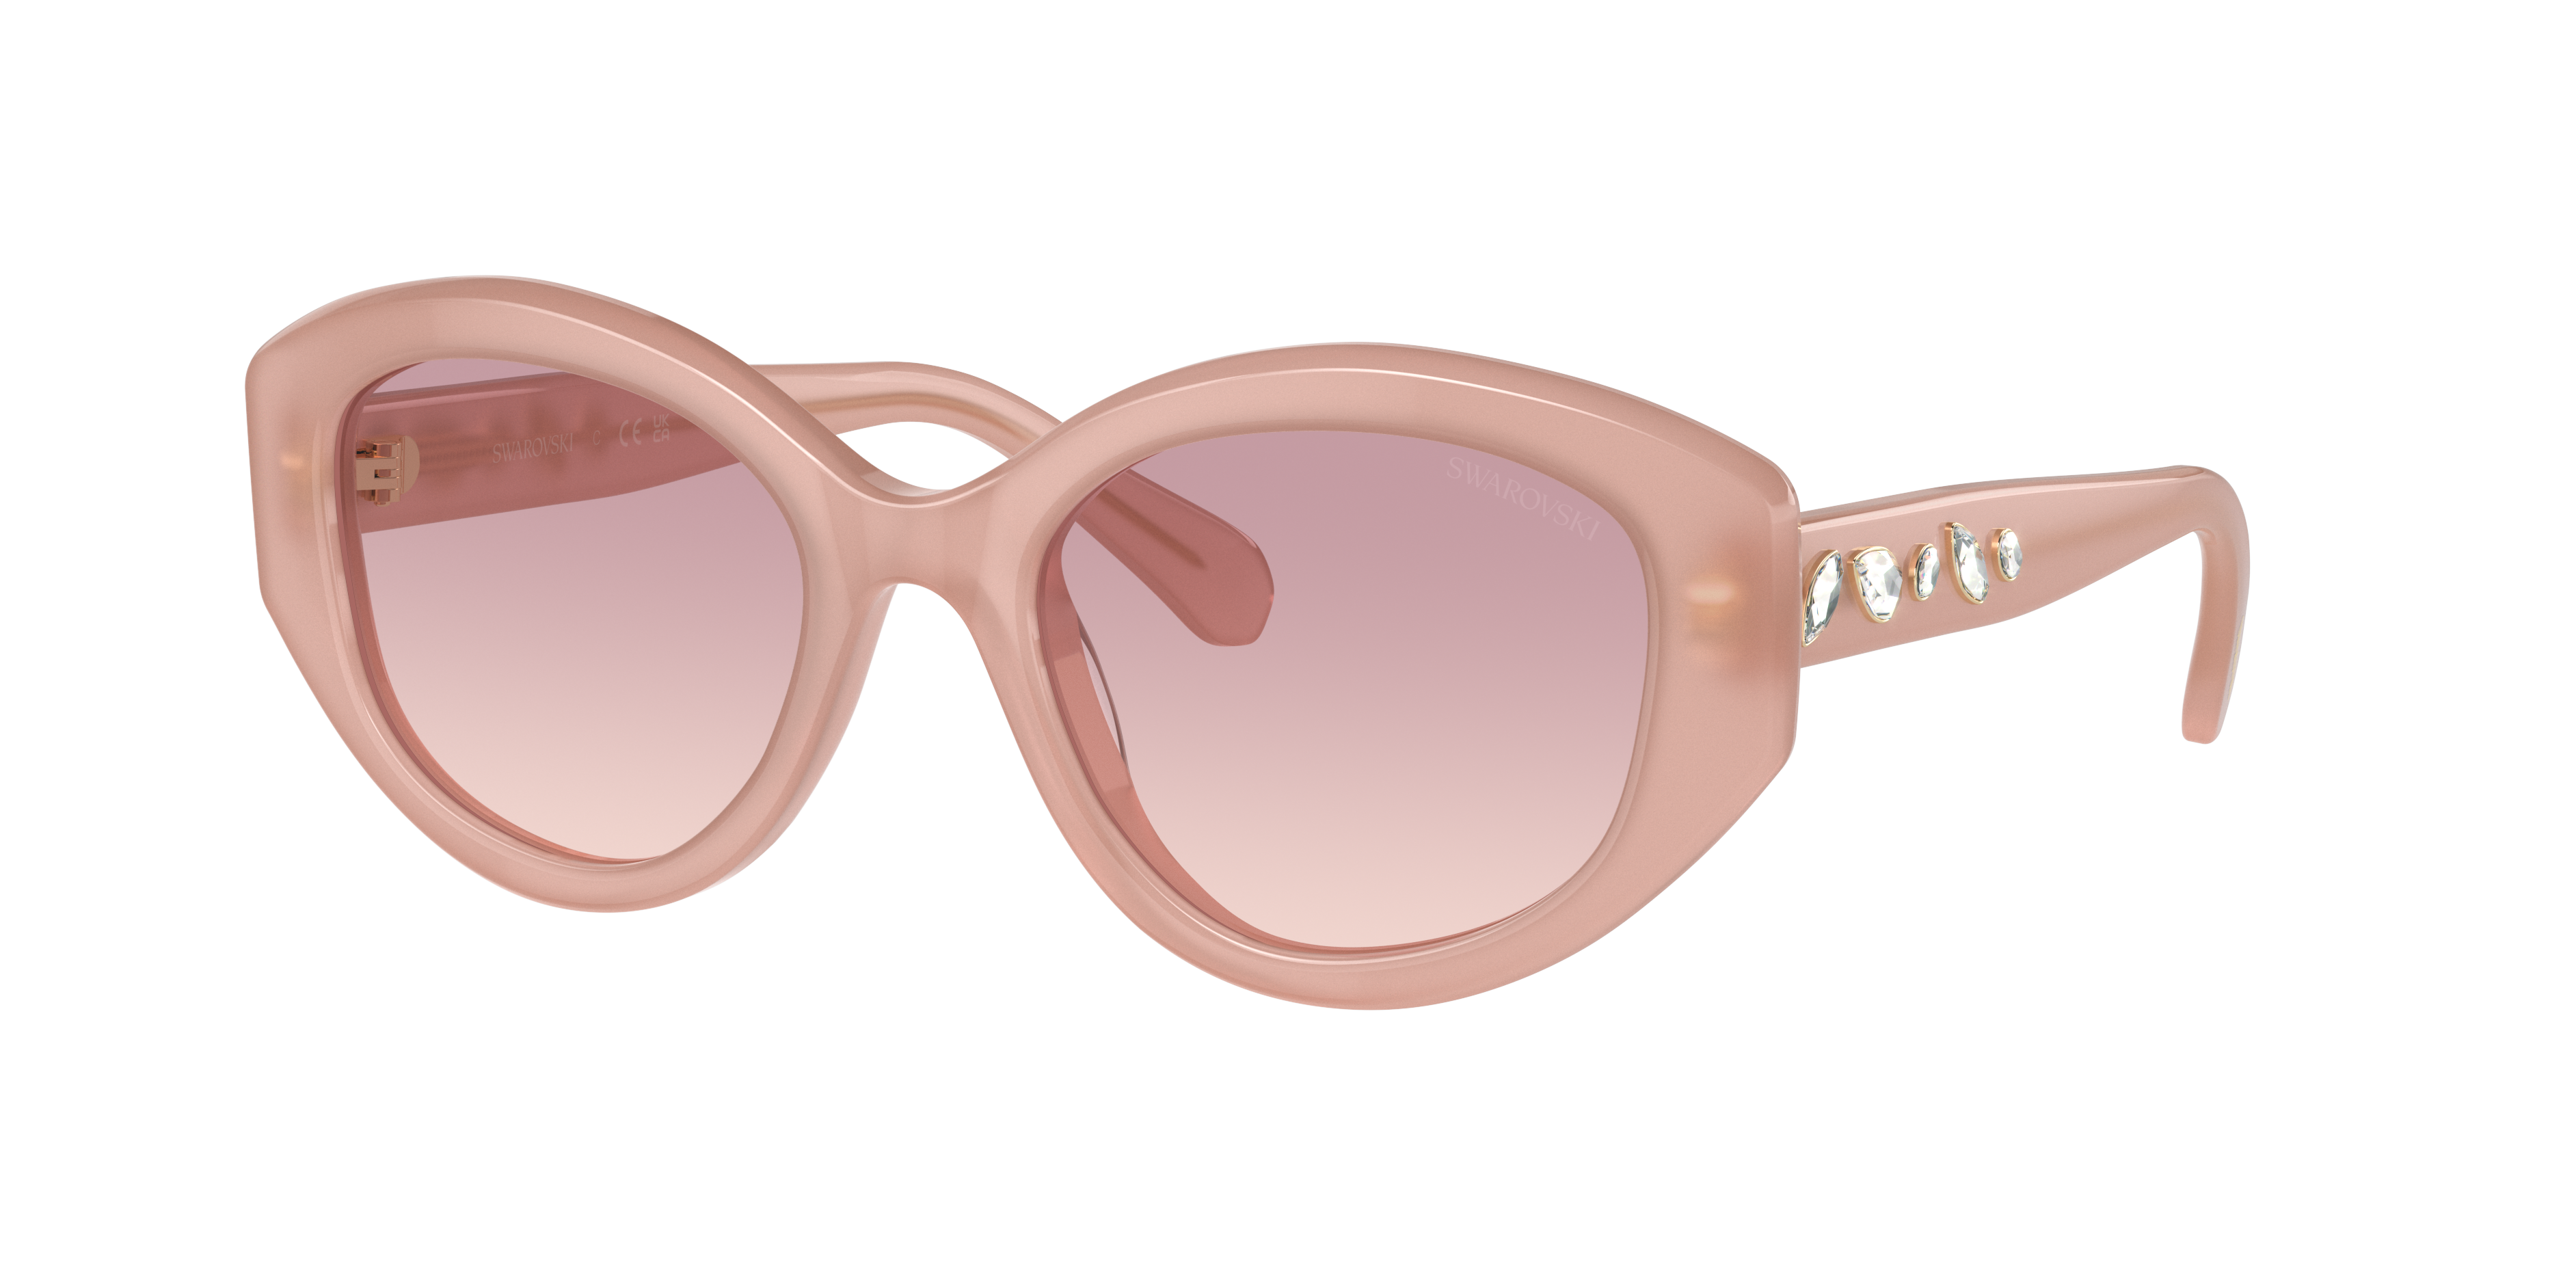 Consulte nosso catálogo de Óculos de Sol Swarovski Eyewear com diversos modelos e preços para sua escolha.